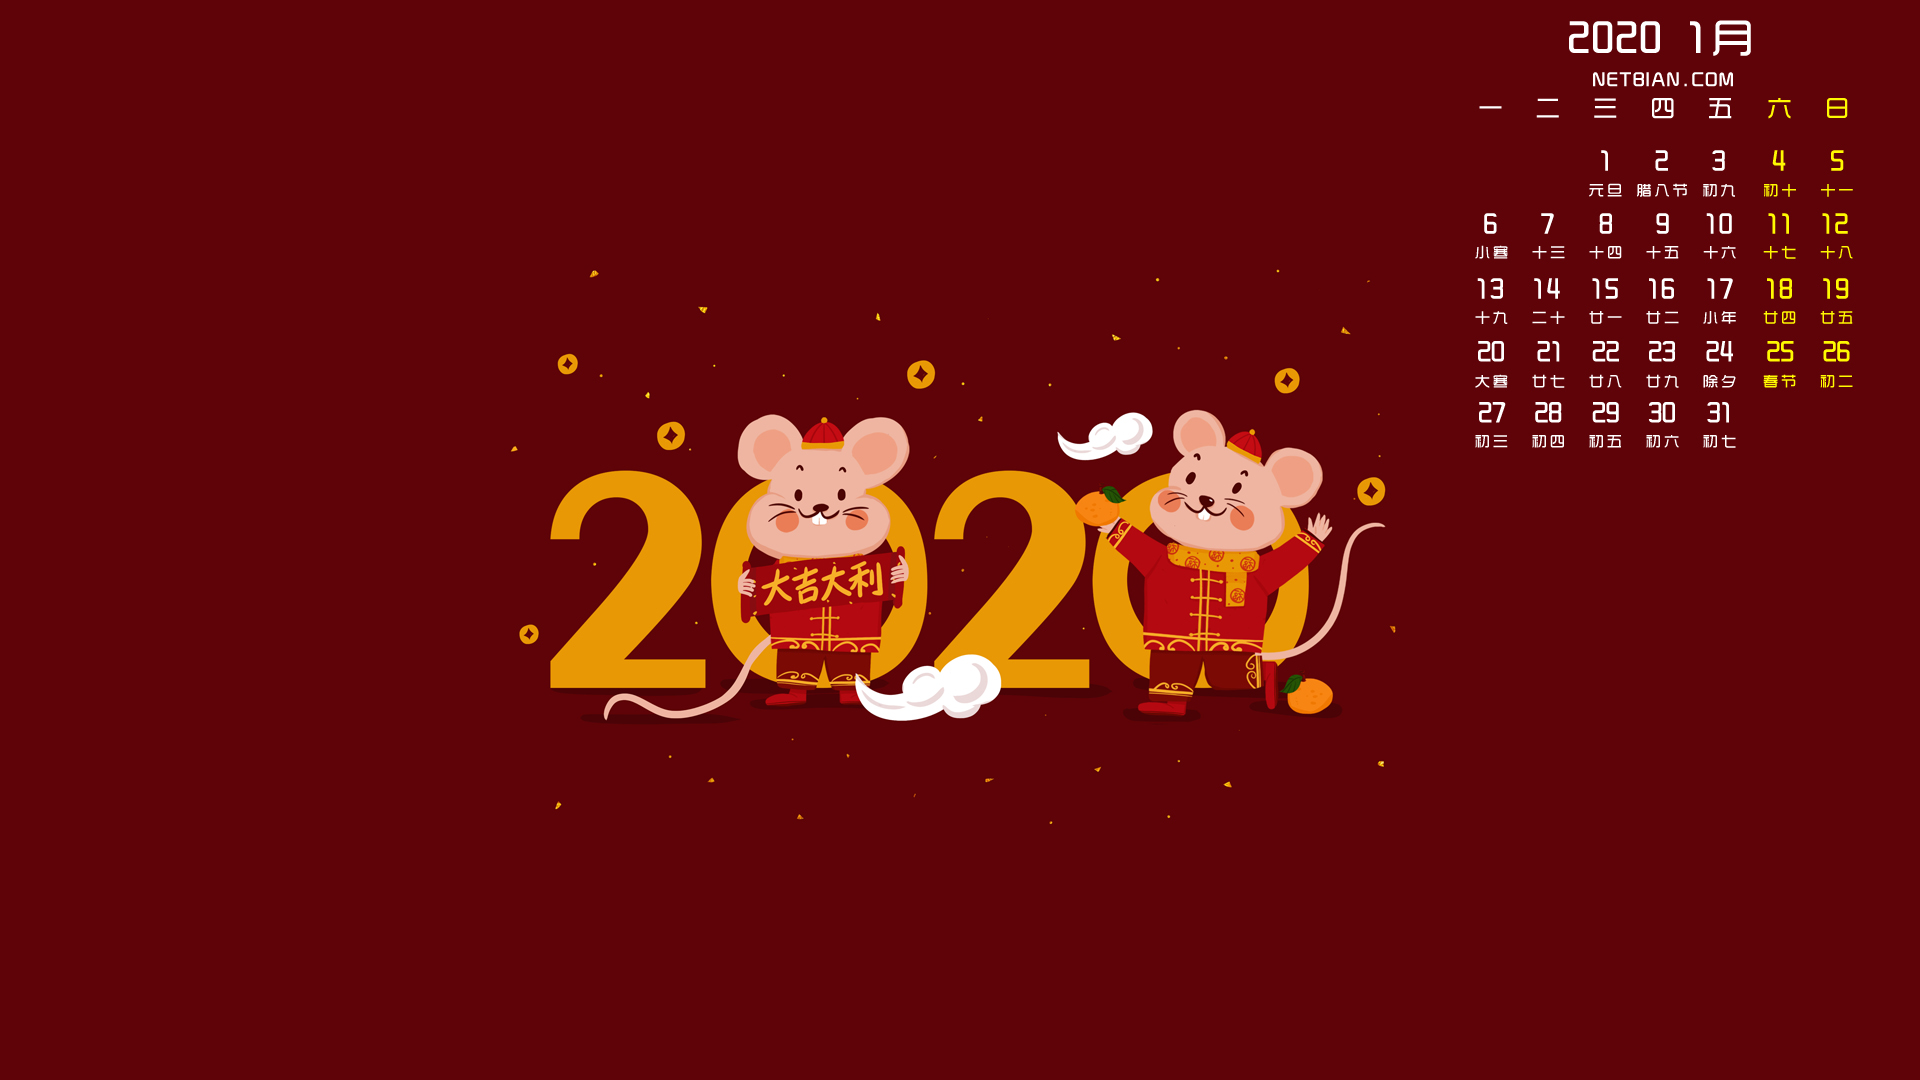 鼠年大吉大利2020年1月日历桌面壁纸